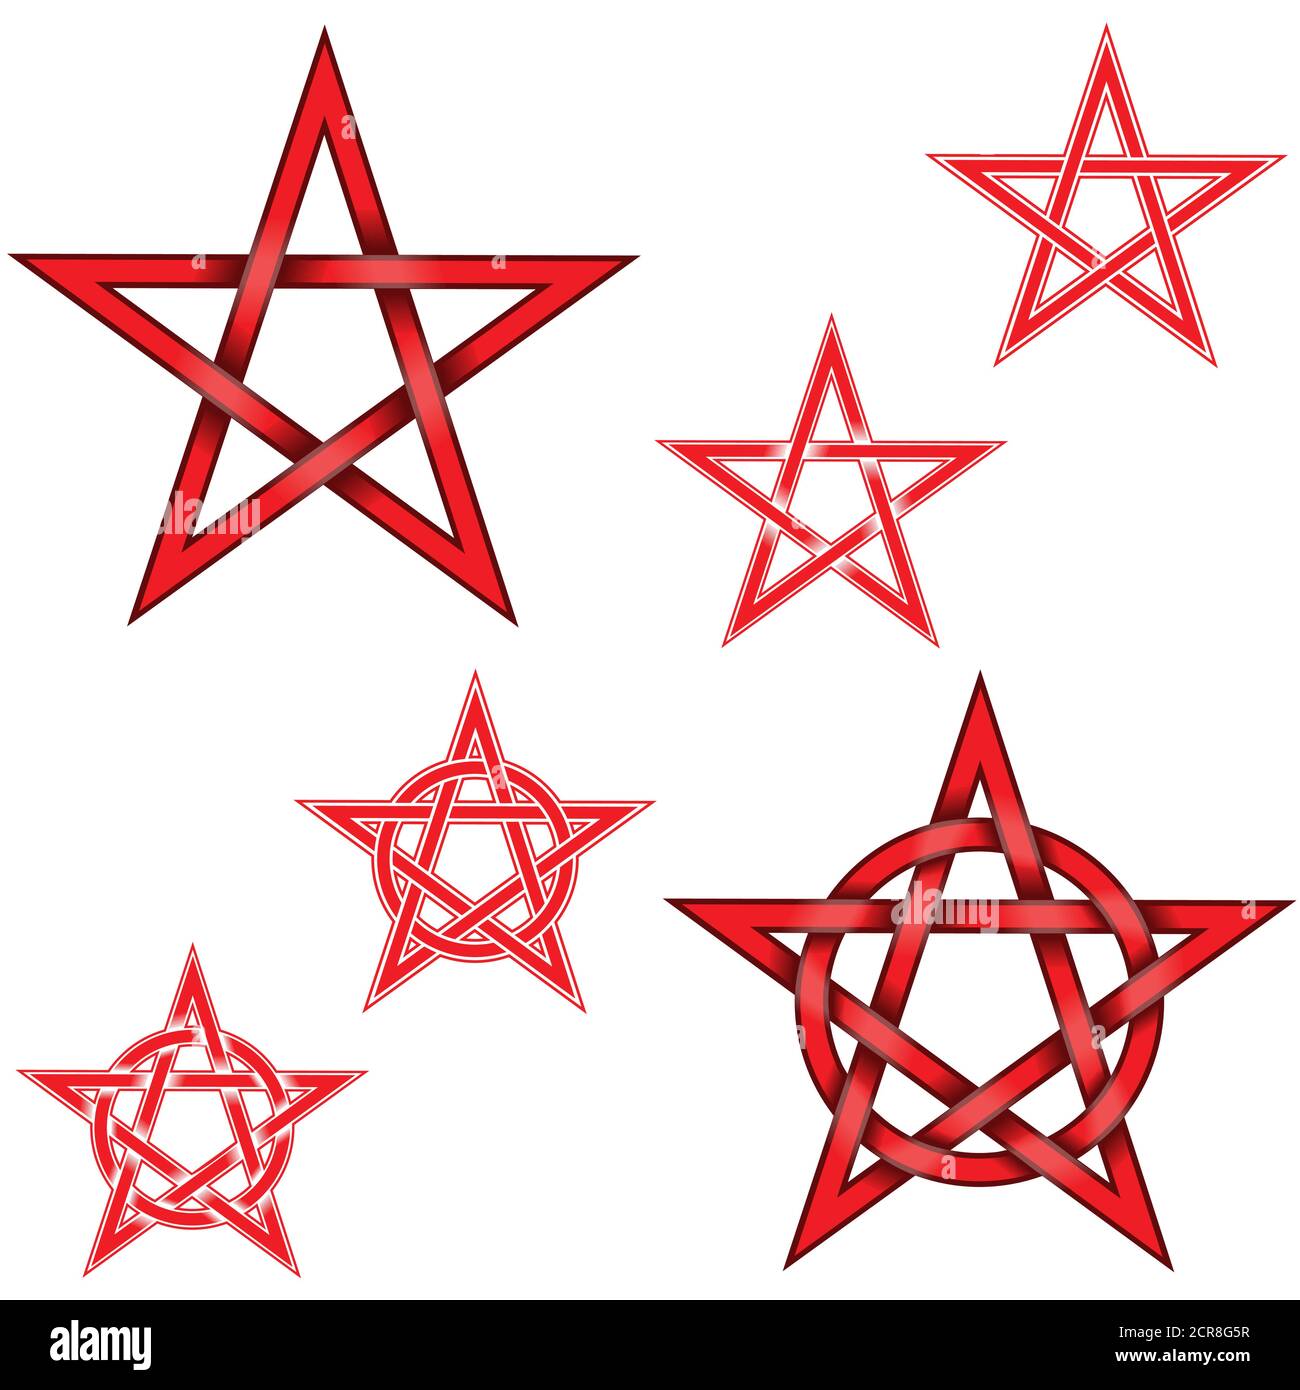 Illustration de 6 étoiles pentagrammes entrelacées avec un cercle, en rouge, le tout sur fond blanc, facile à changer de couleur et à utiliser Illustration de Vecteur